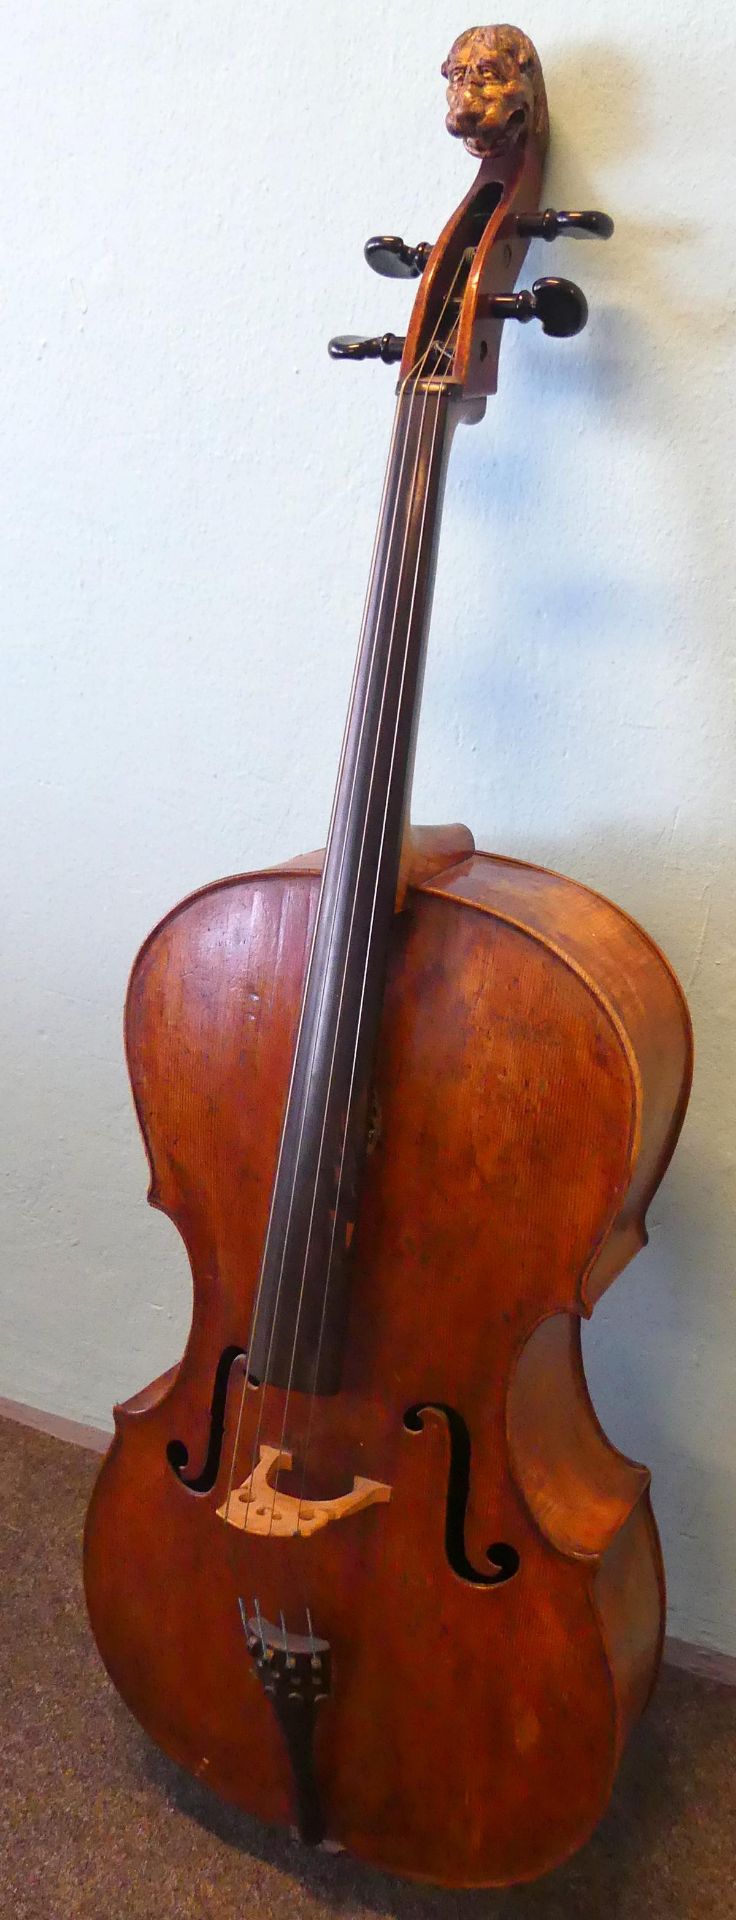 Alletsee, Paulus (1684 Schwangau-1733 München), Cello, Ahorn, 1727, - Bild 2 aus 6